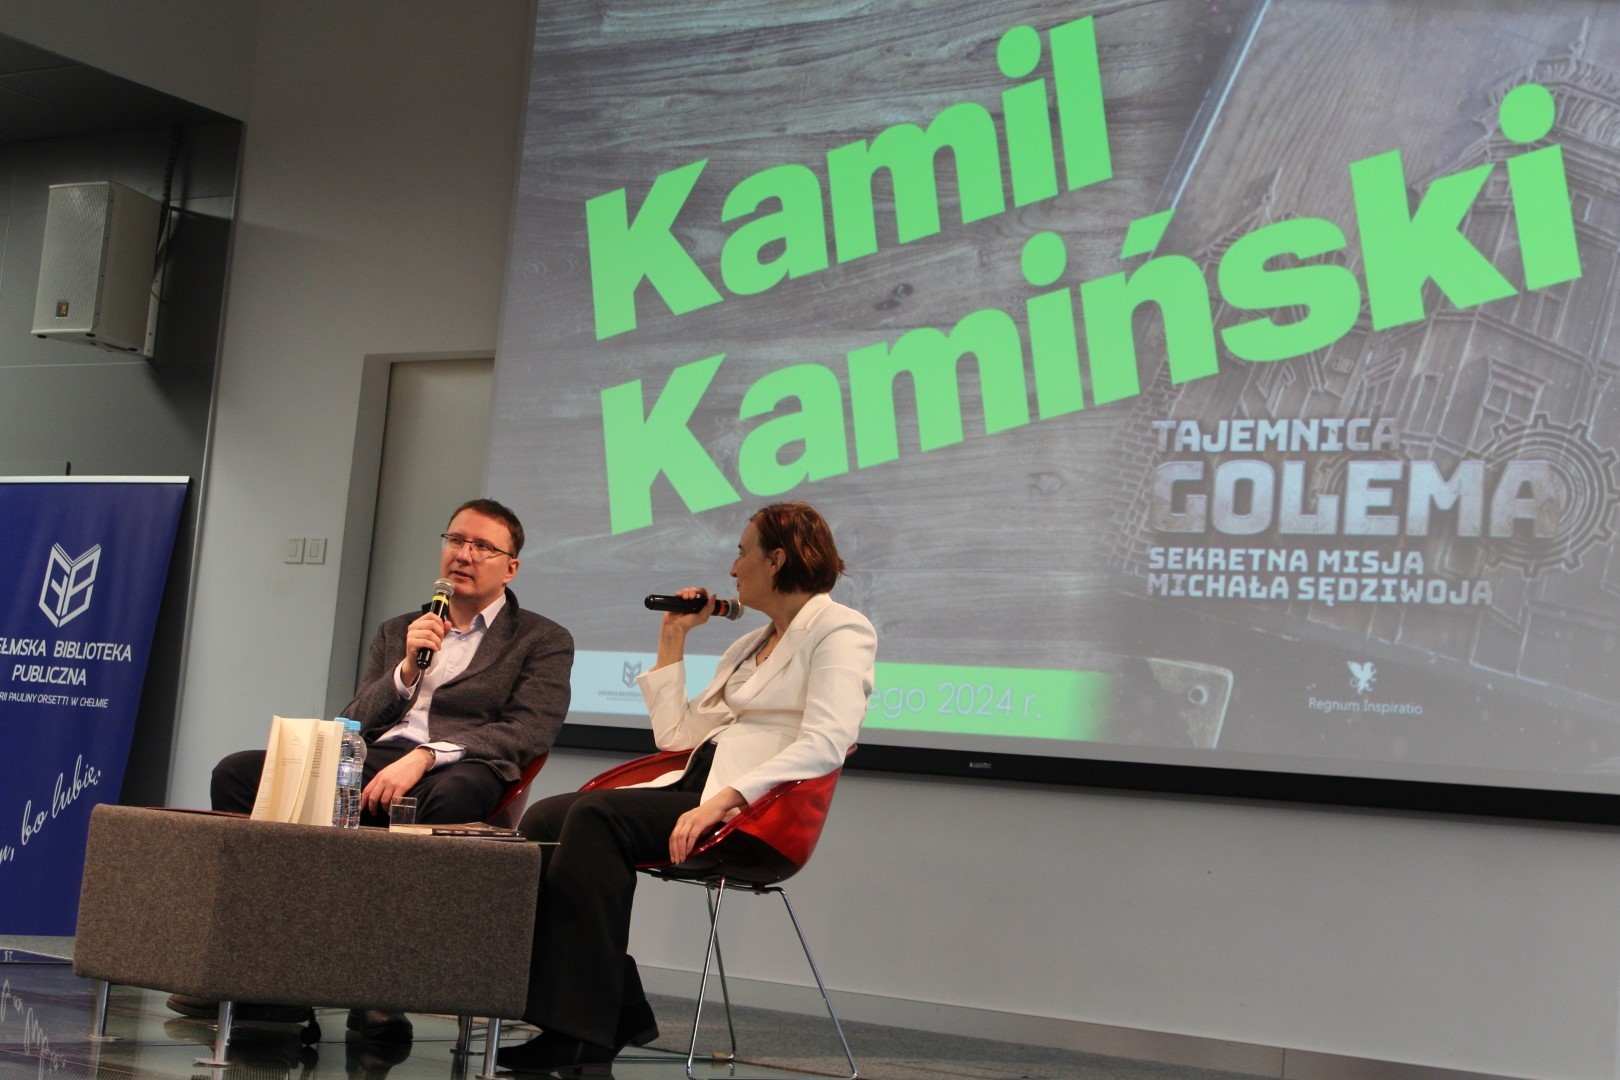 Spotkanie autorskie z Kamilem Kamińskim. Na scenie autor z prowadzącą na drugim planie ekran z zielonym napisem